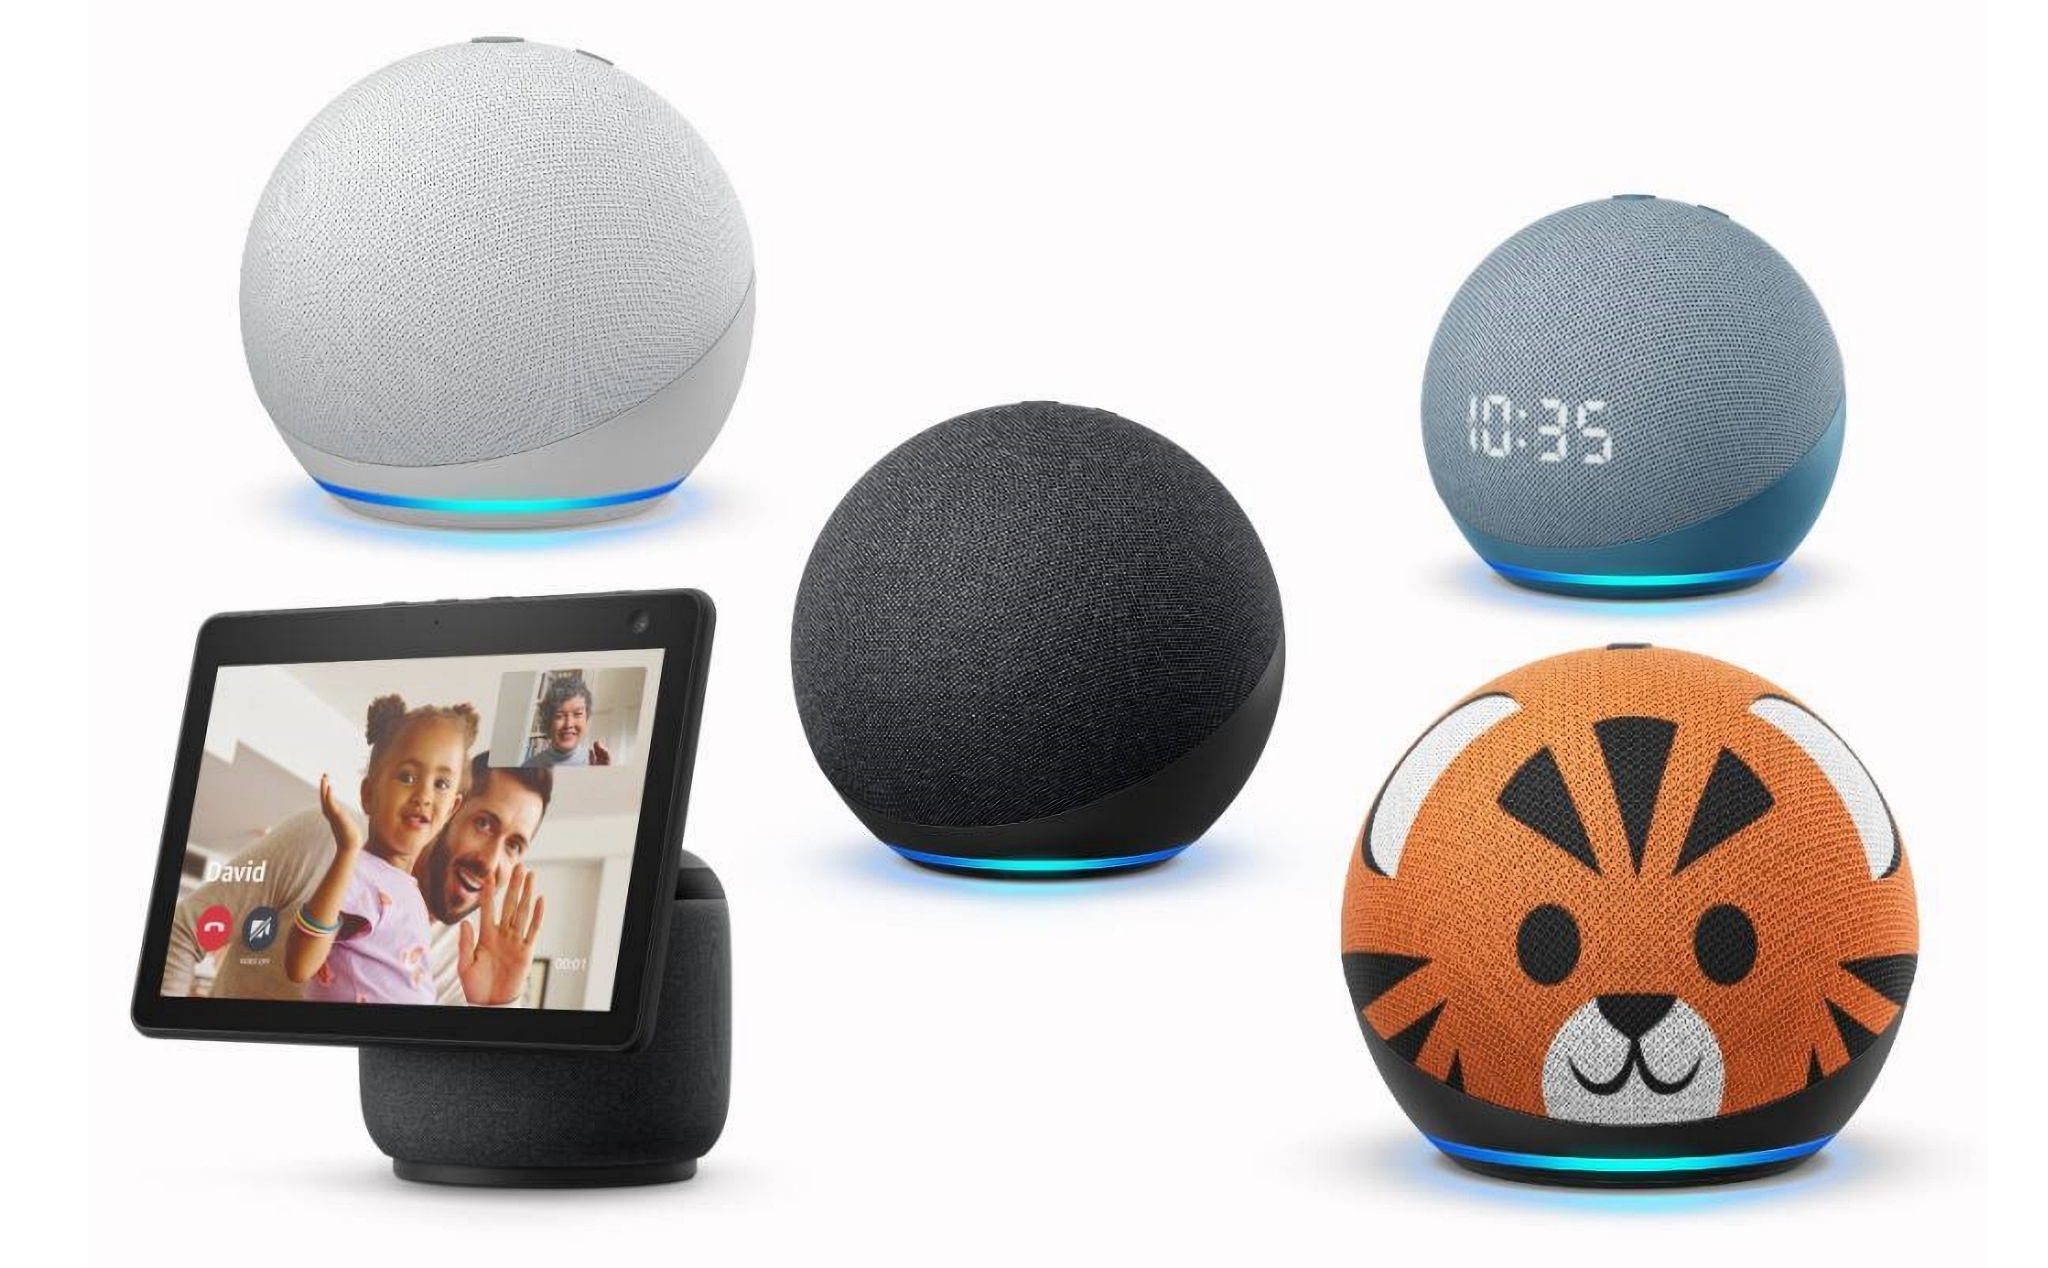 Loa Amazon Echo & Echo Dot 4th Gen tròn trịa, phần cứng mới. Màn hình Echo Show 10 thông minh thú vị